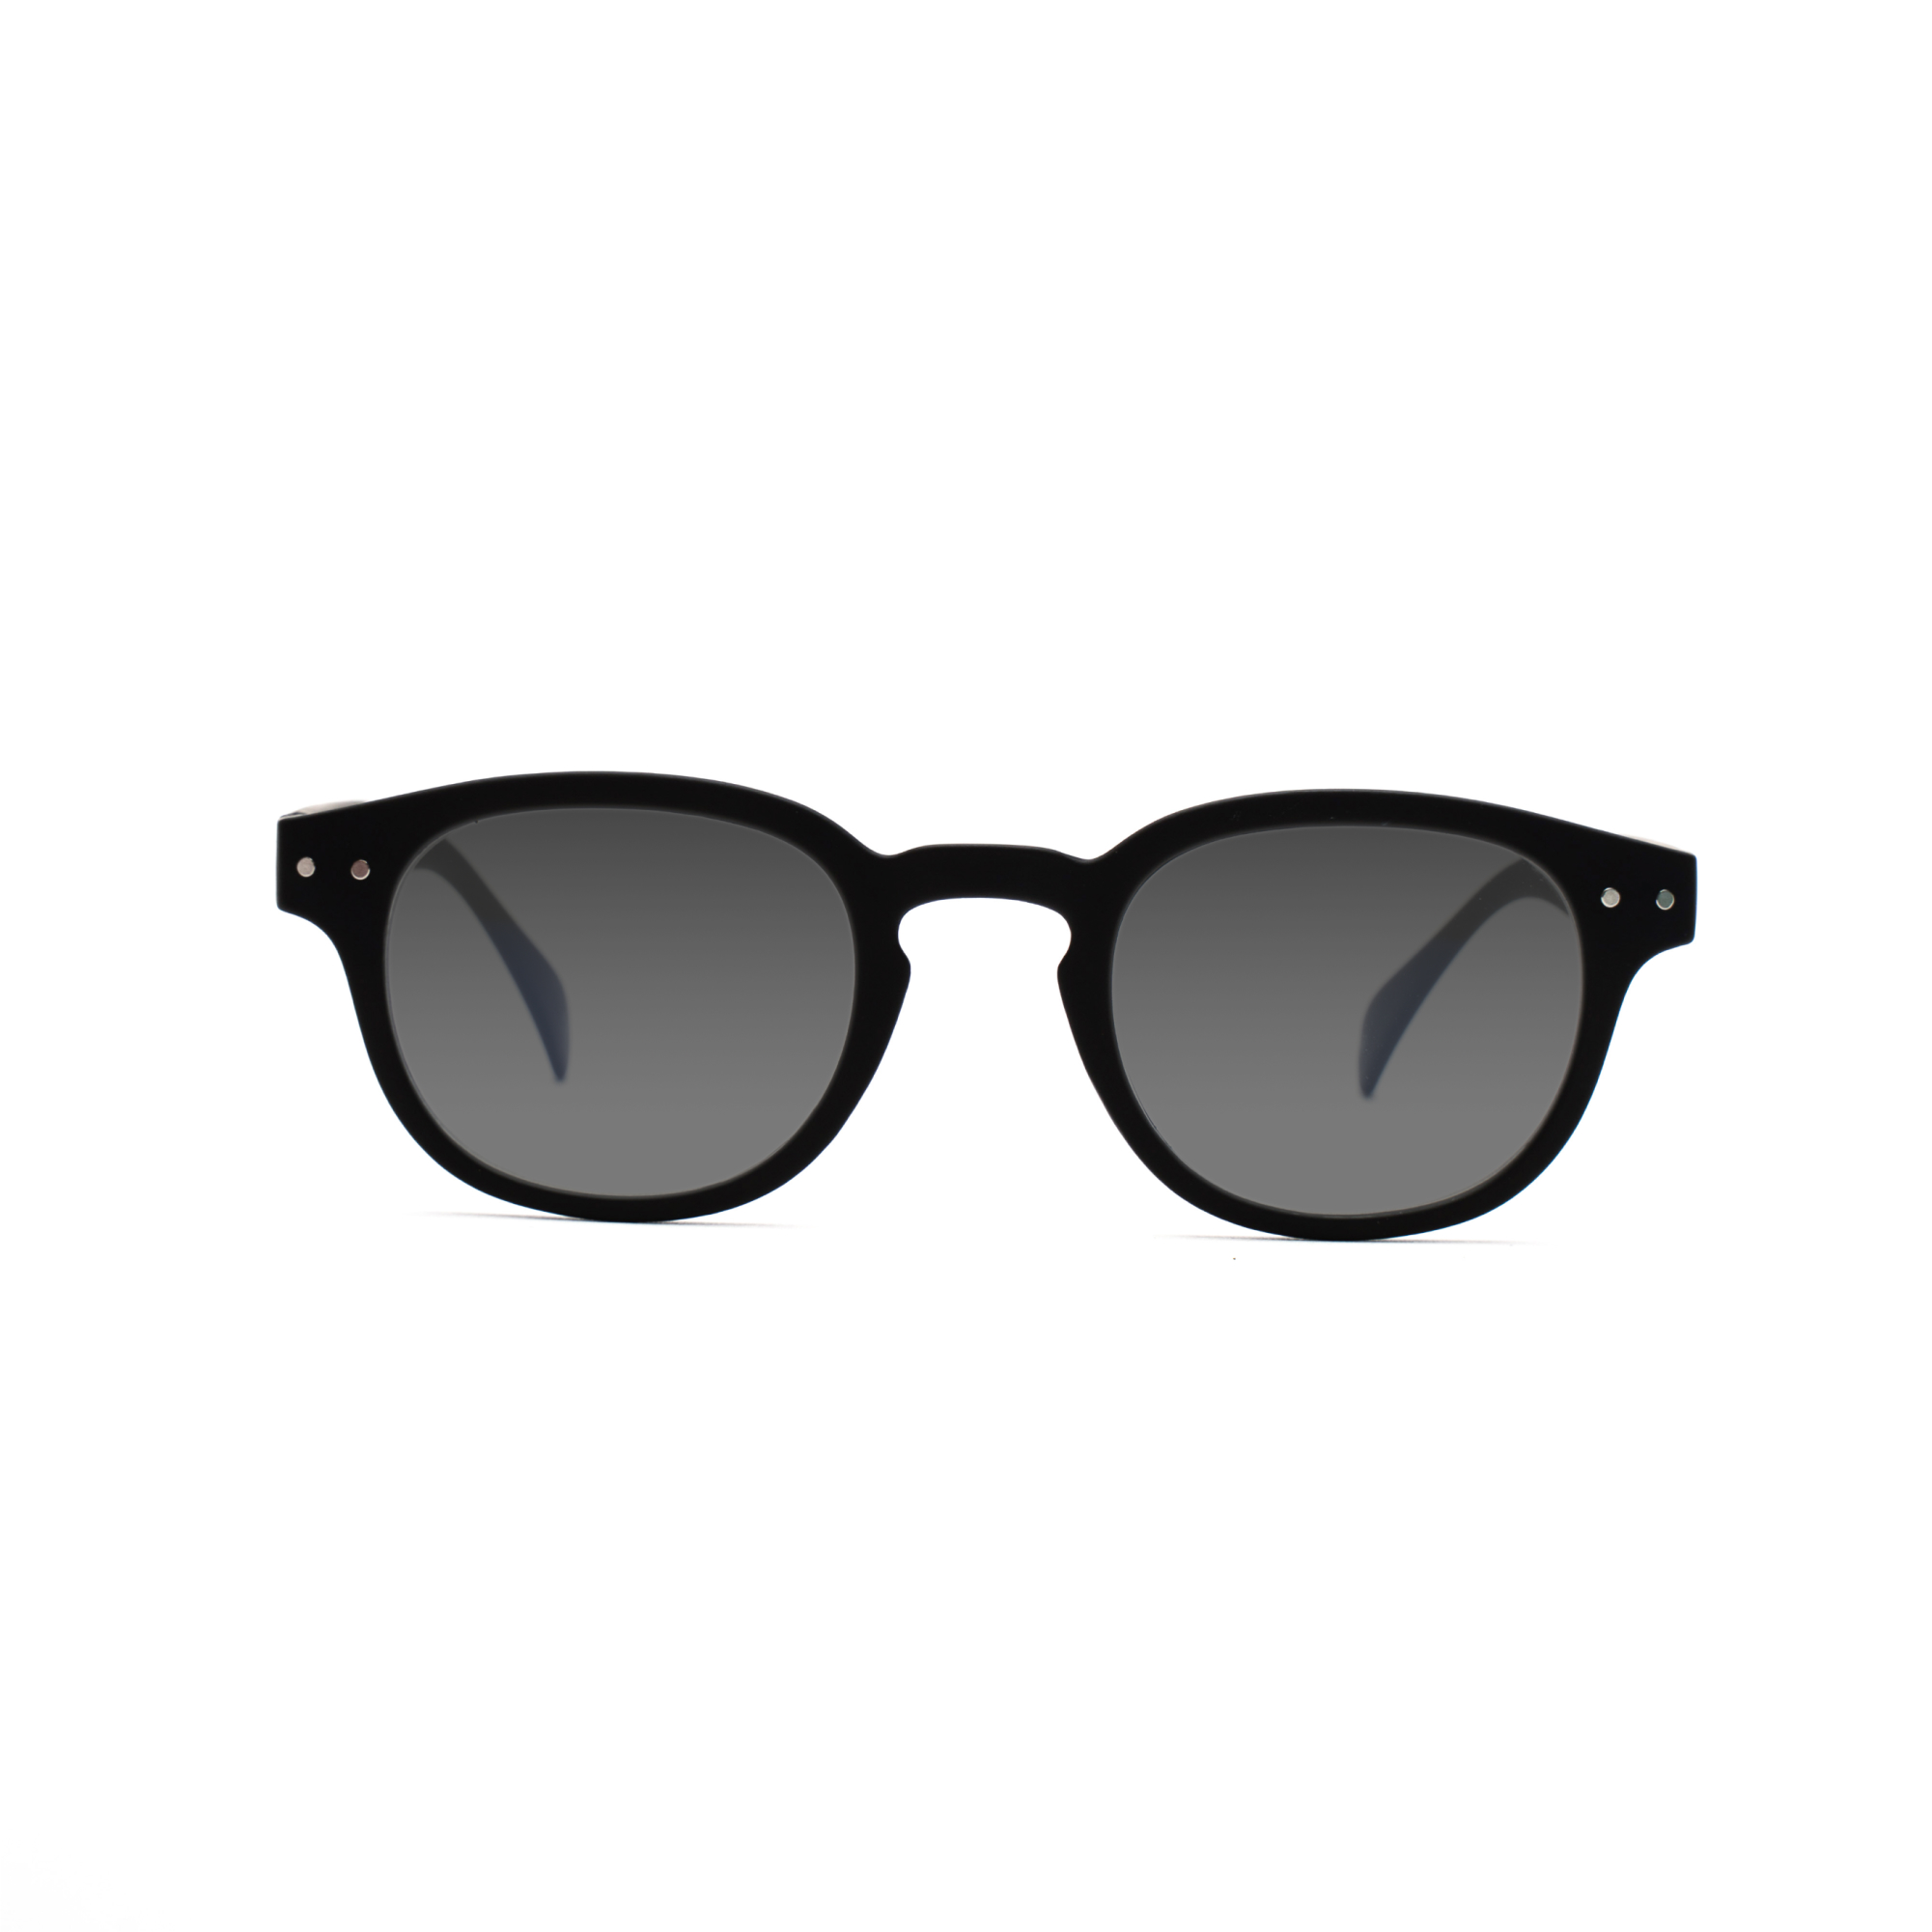 men's sunglasses – Anton UVSUN m - Black